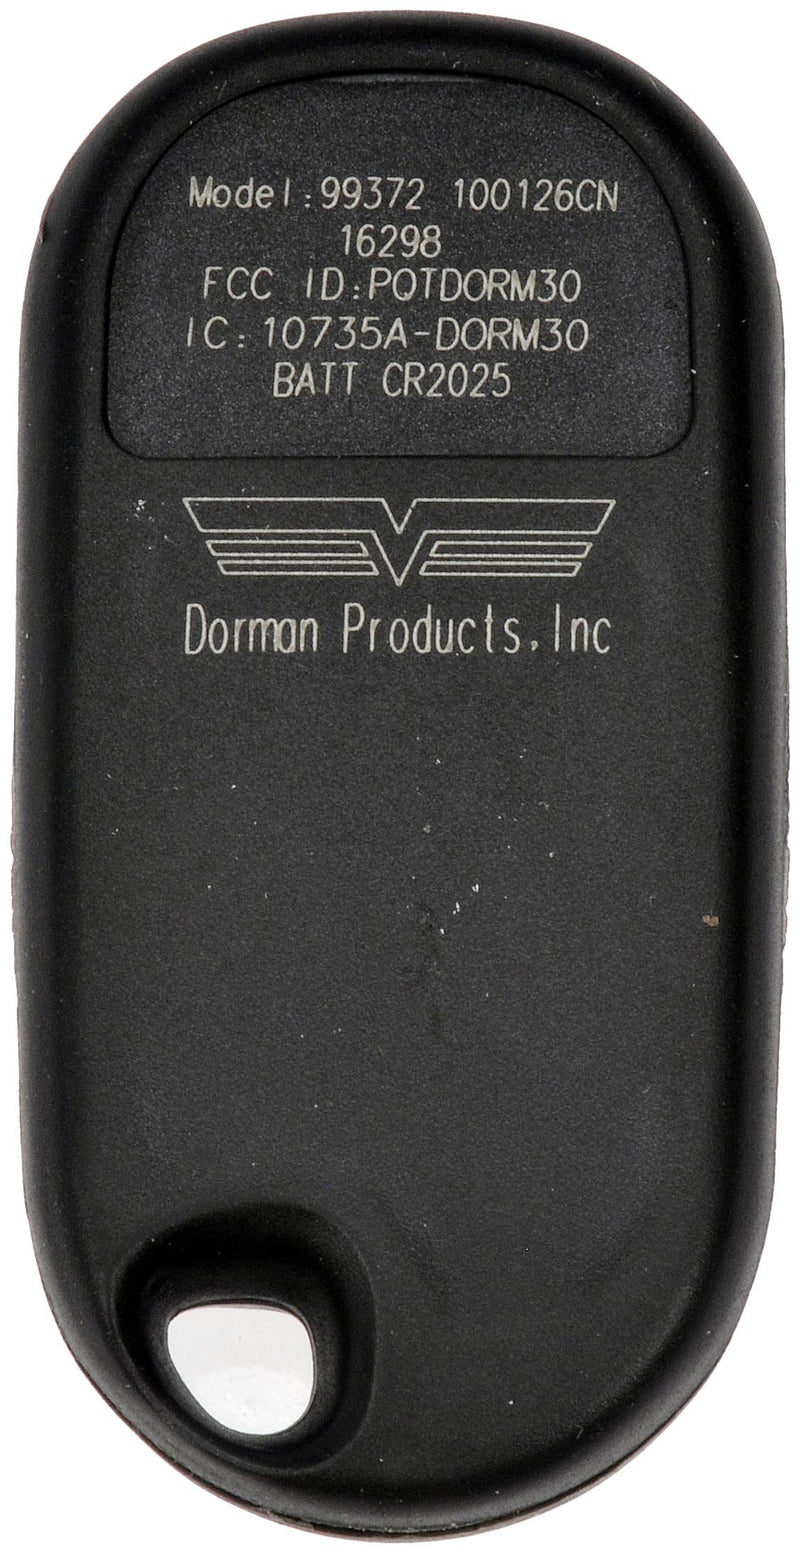  [AUSTRALIA] - Dorman 99372 Keyless Entry Transmitter for Select Honda Models, Black